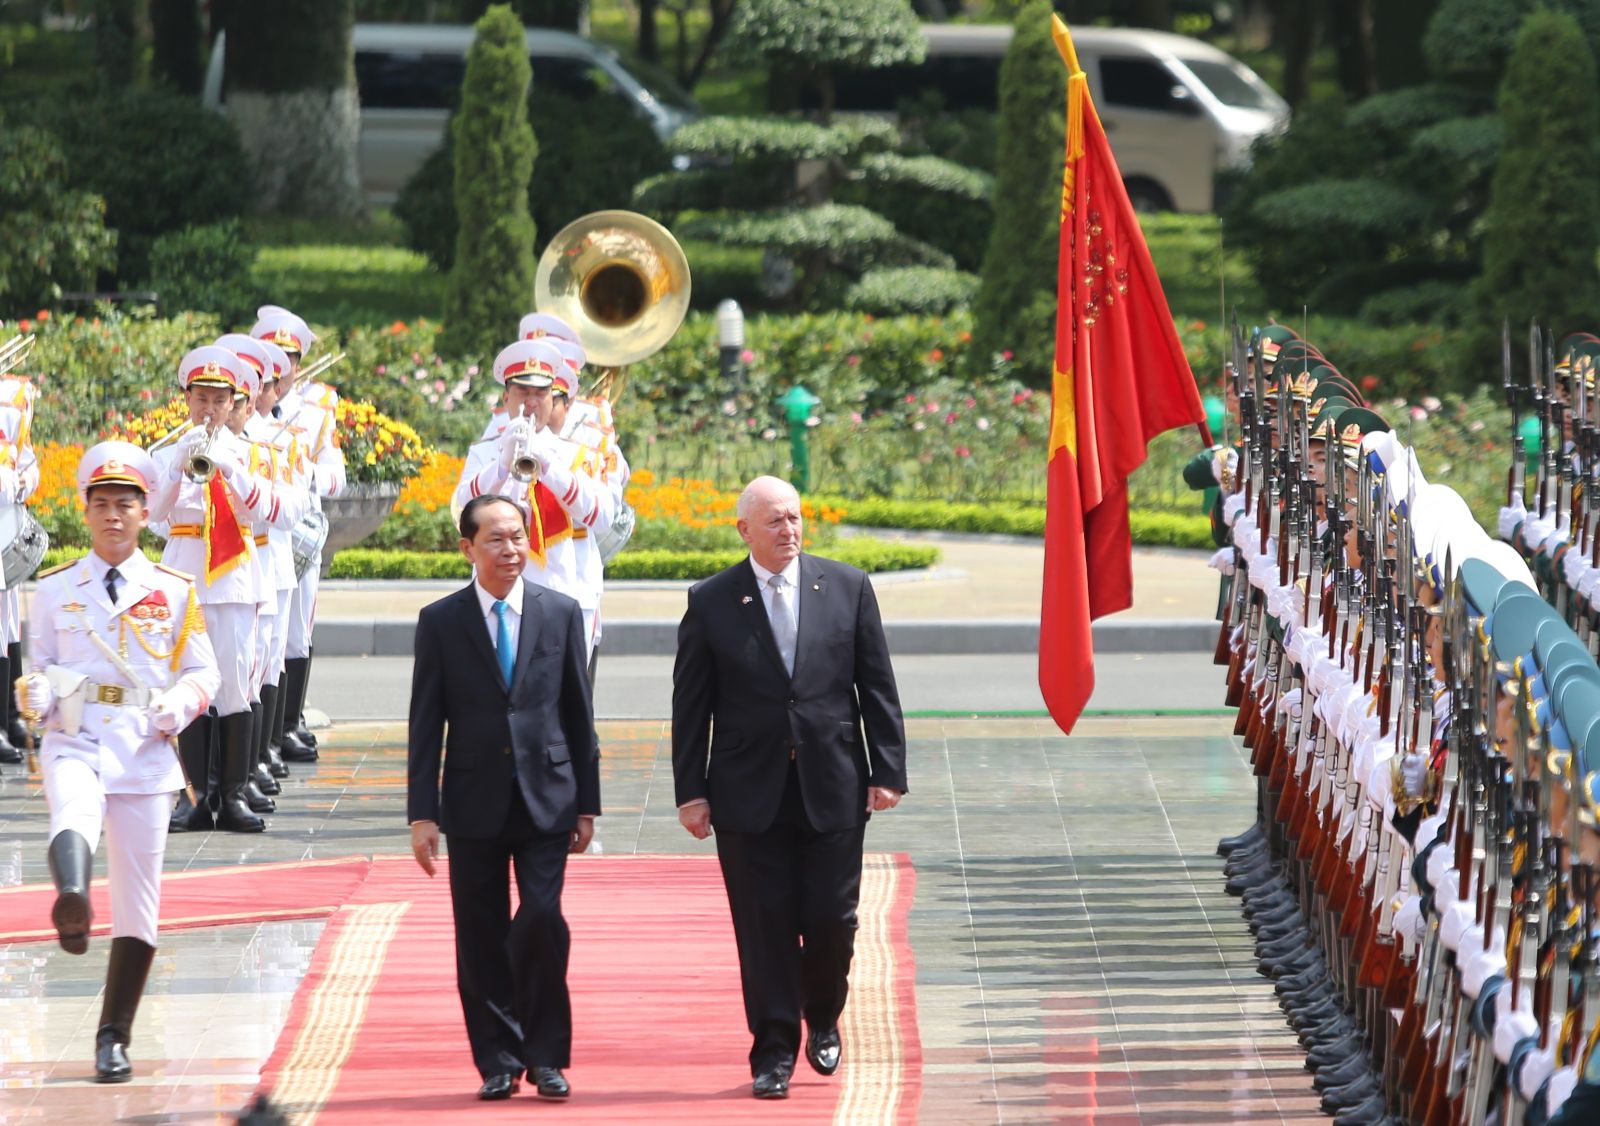 Chủ tịch nước Trần Đại Quang và Toàn quyền Australia Peter Cosgrove duyệt Đội Danh dự. Ảnh: Chinhphu.vn